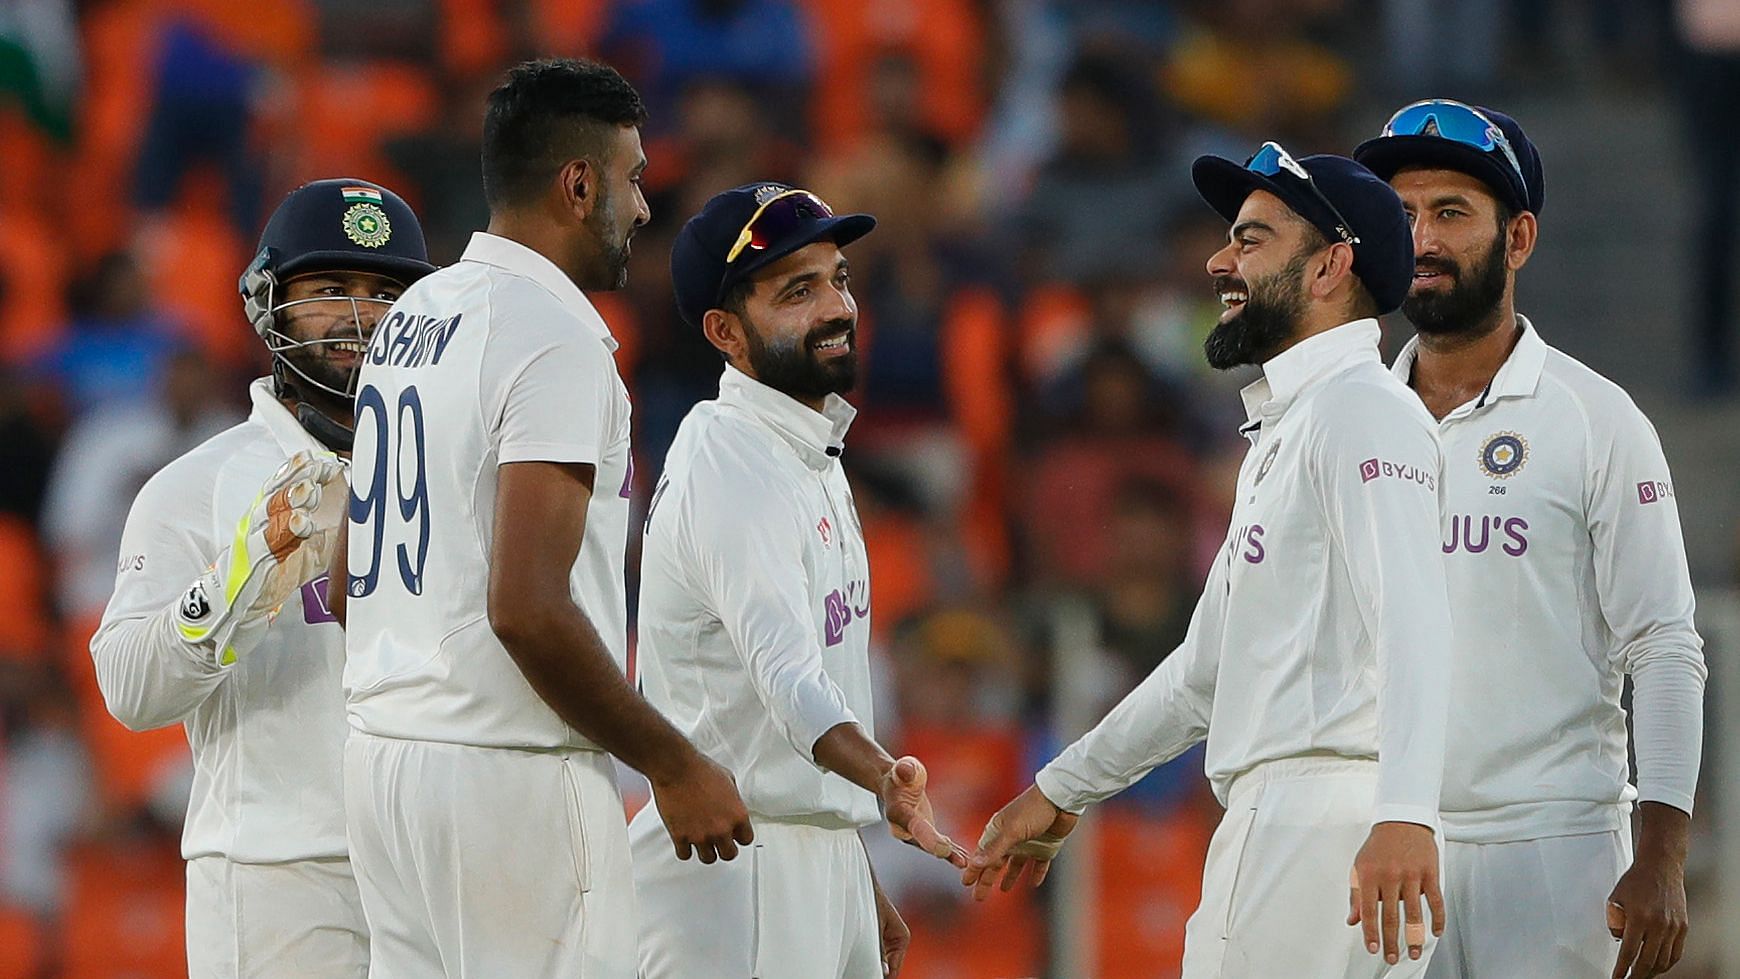 भारत-इंग्लैड के बीच खेली जारी टेस्ट सीरीज के तीसरे मैच की फोटो